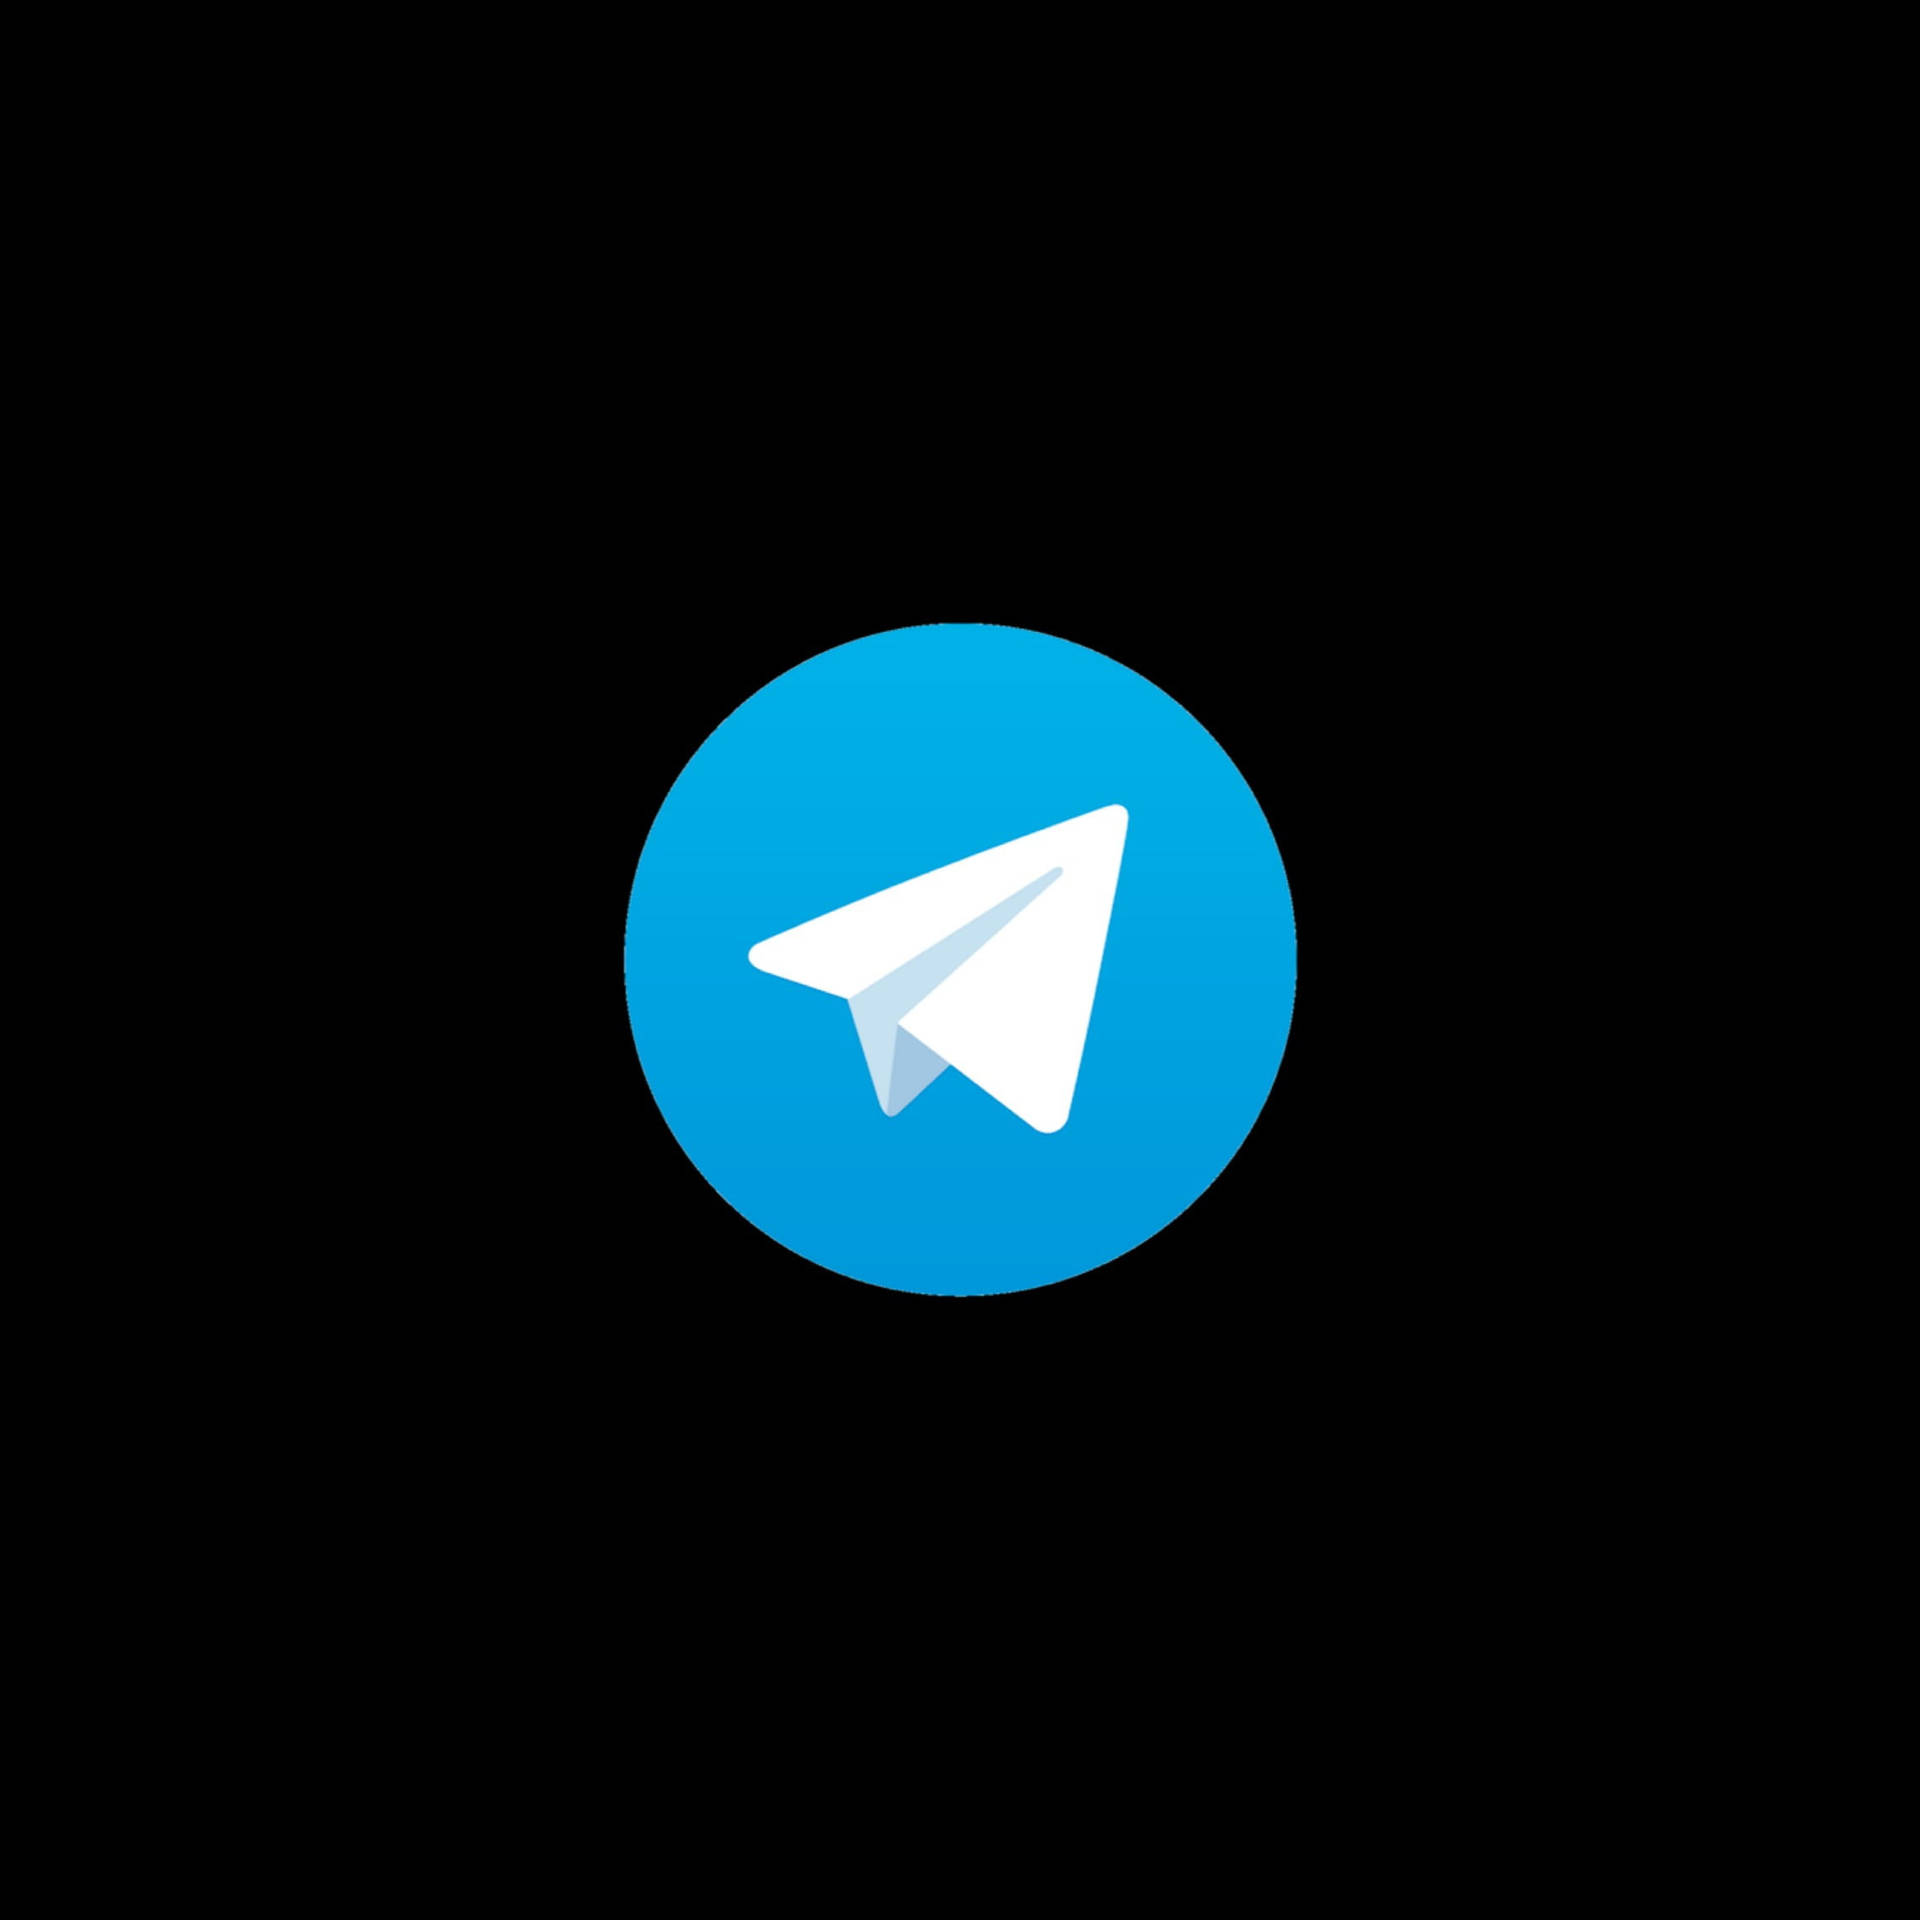 Logodo Telegram Em Fundo Preto. Papel de Parede